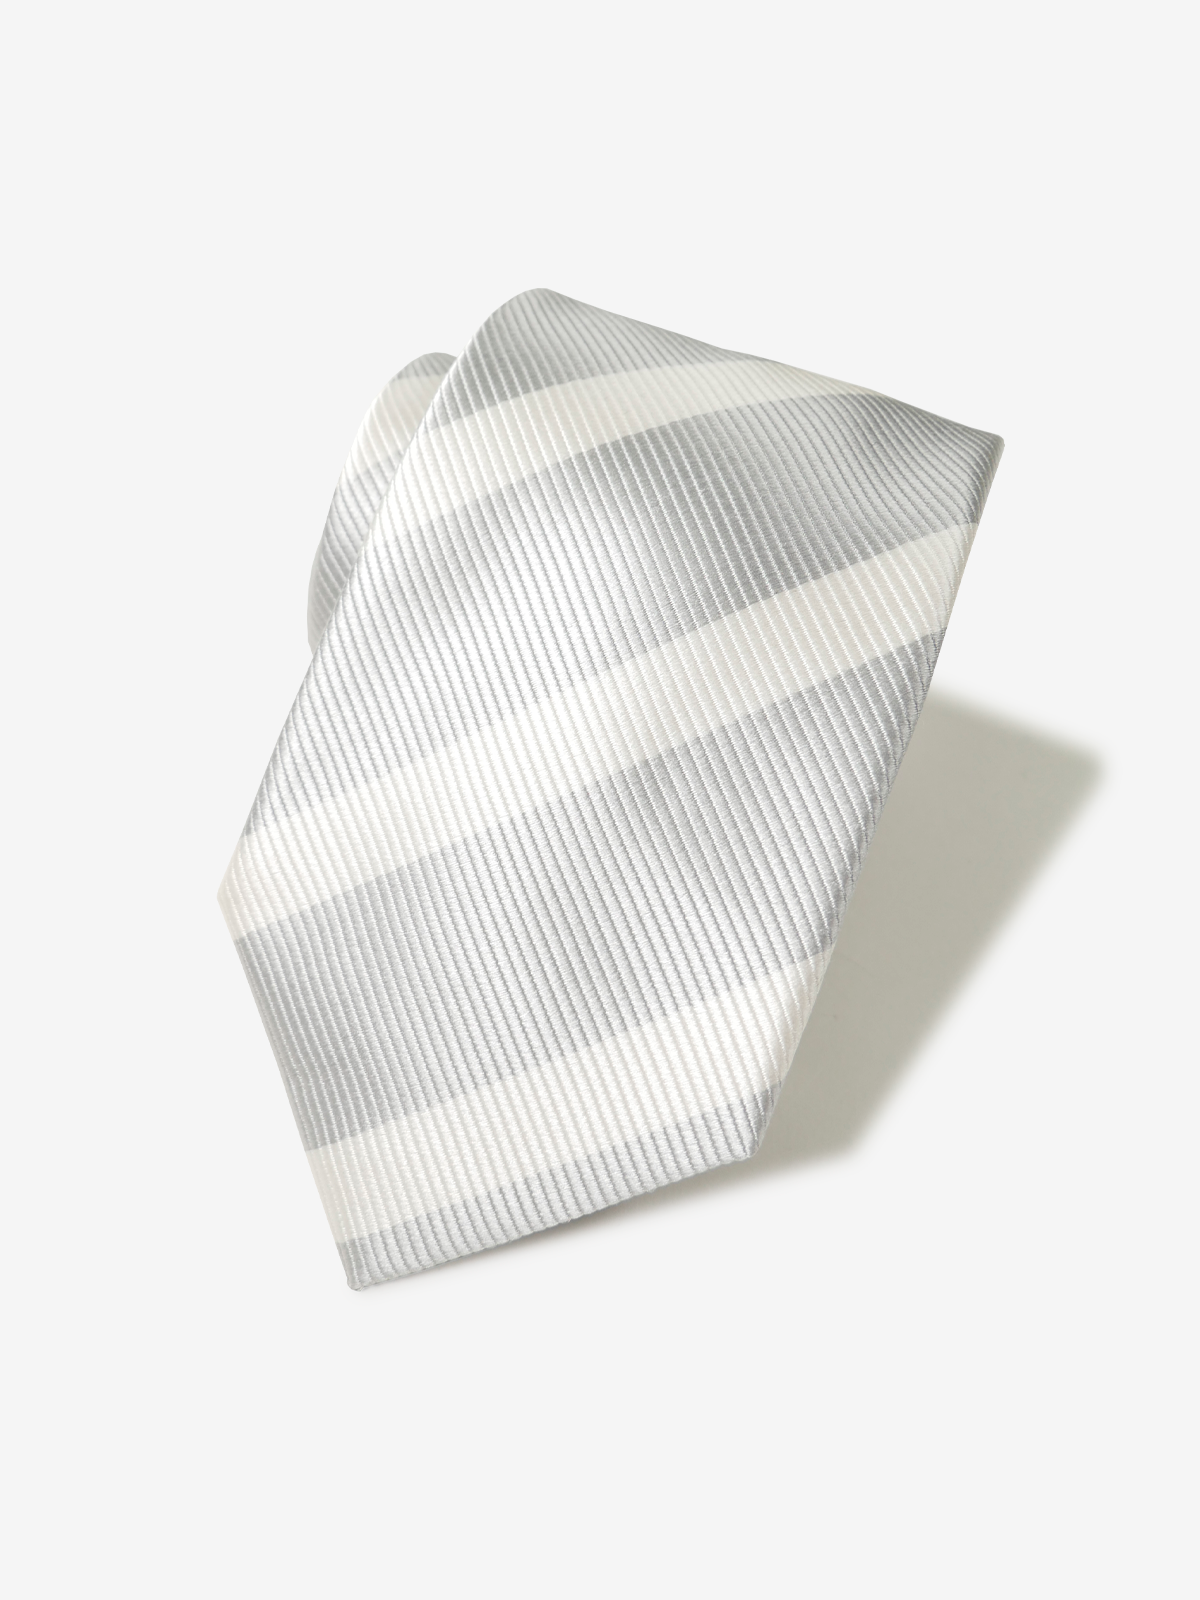 Repp Stripe Tie｜シルバー